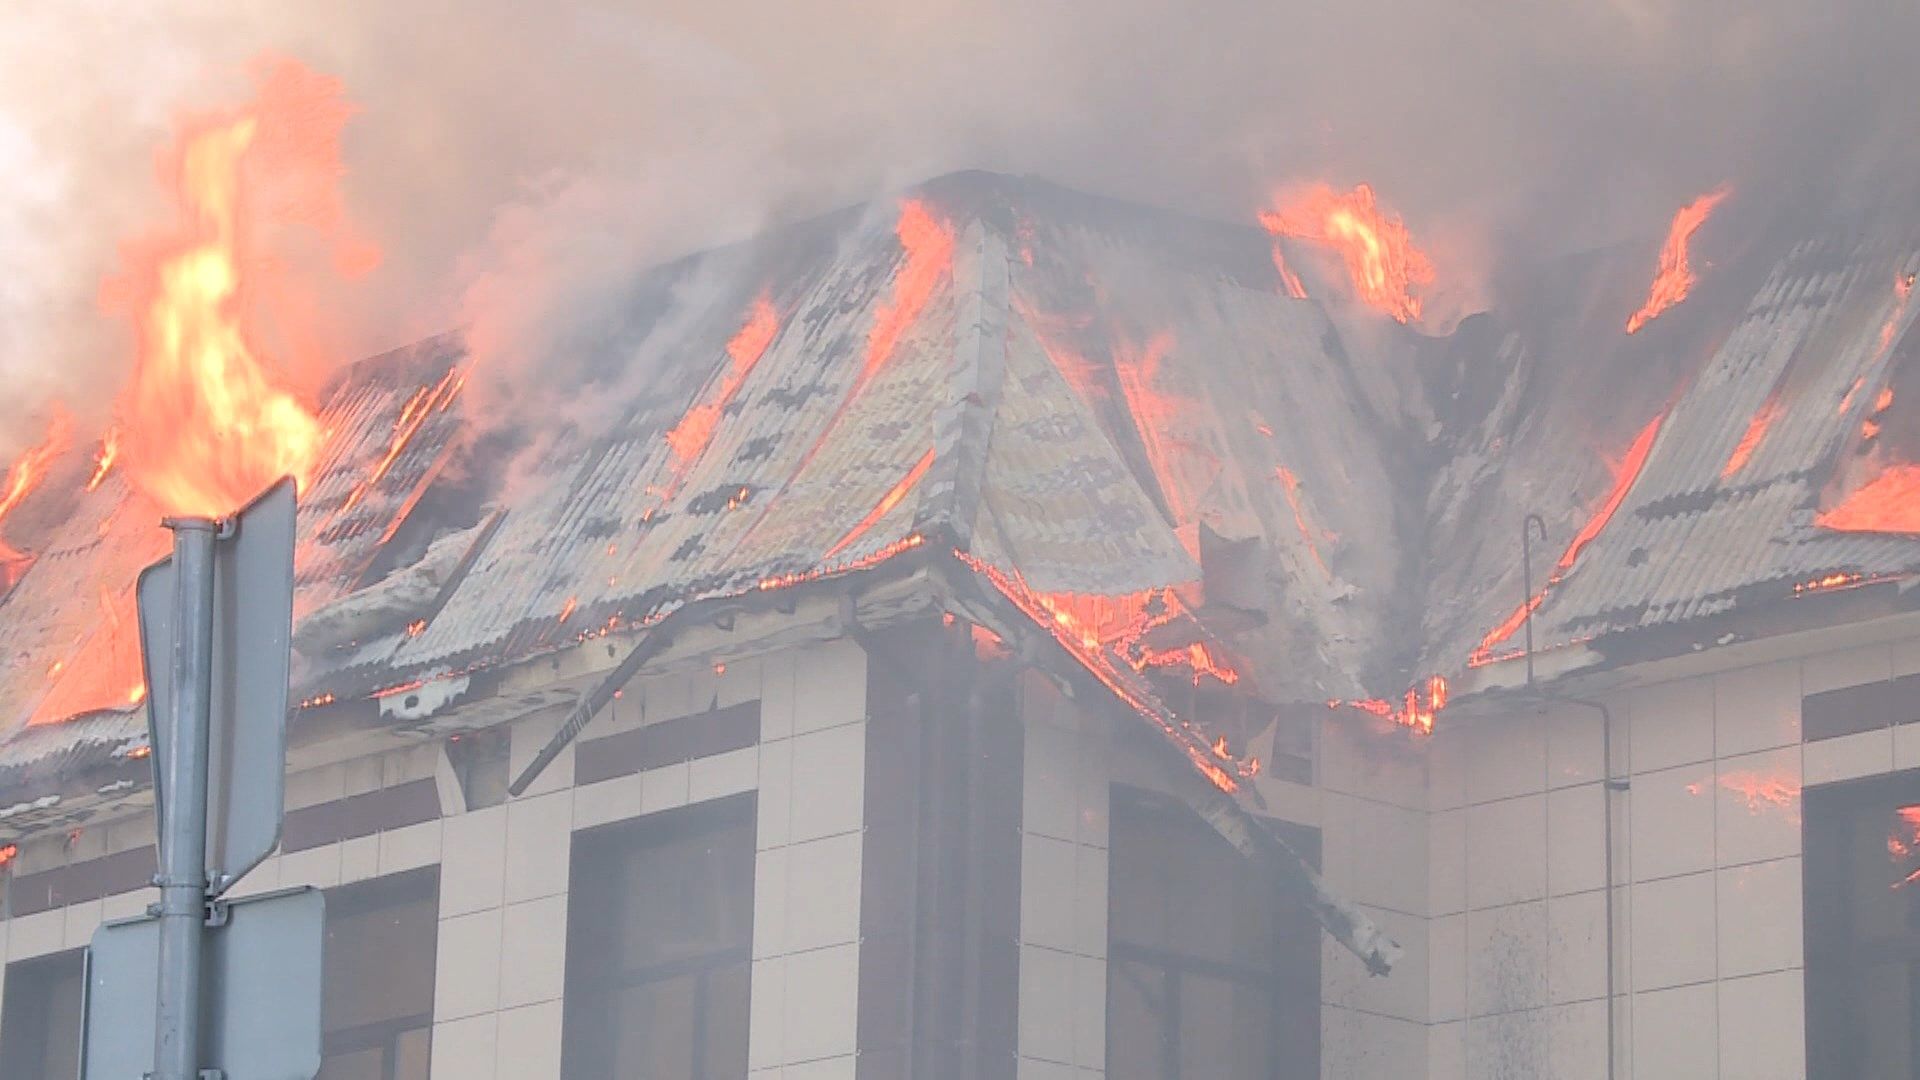  «30 минут искали гидранты»: что известно о масштабном пожаре в отеле «Астория» в Казани 